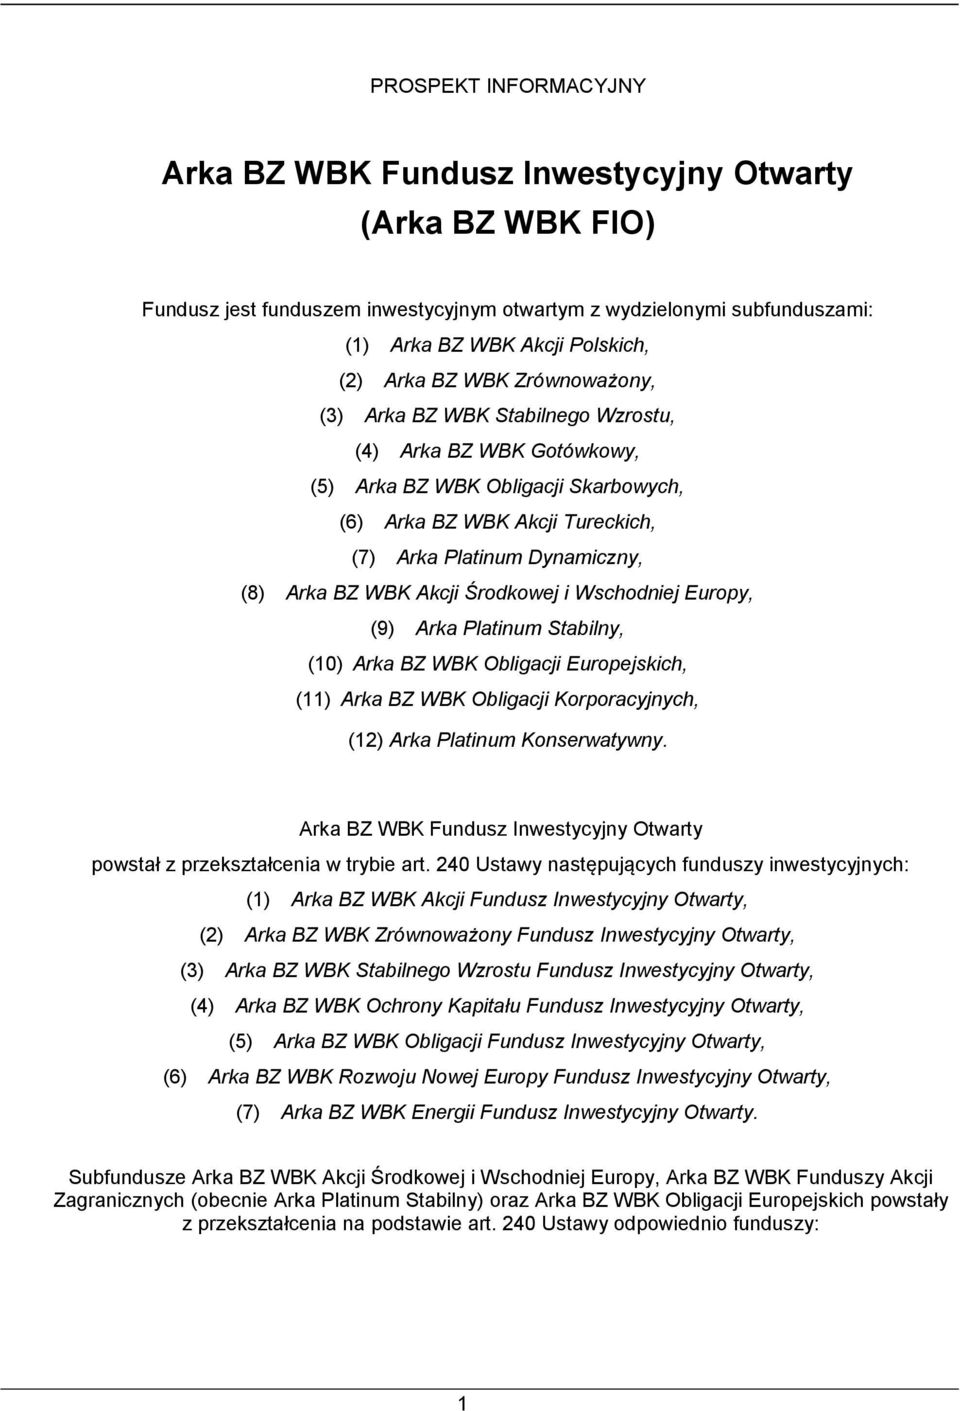 WBK Akcji Środkowej i Wschodniej Europy, (9) Arka Platinum Stabilny, (10) Arka BZ WBK Obligacji Europejskich, (11) Arka BZ WBK Obligacji Korporacyjnych, (12) Arka Platinum Konserwatywny.